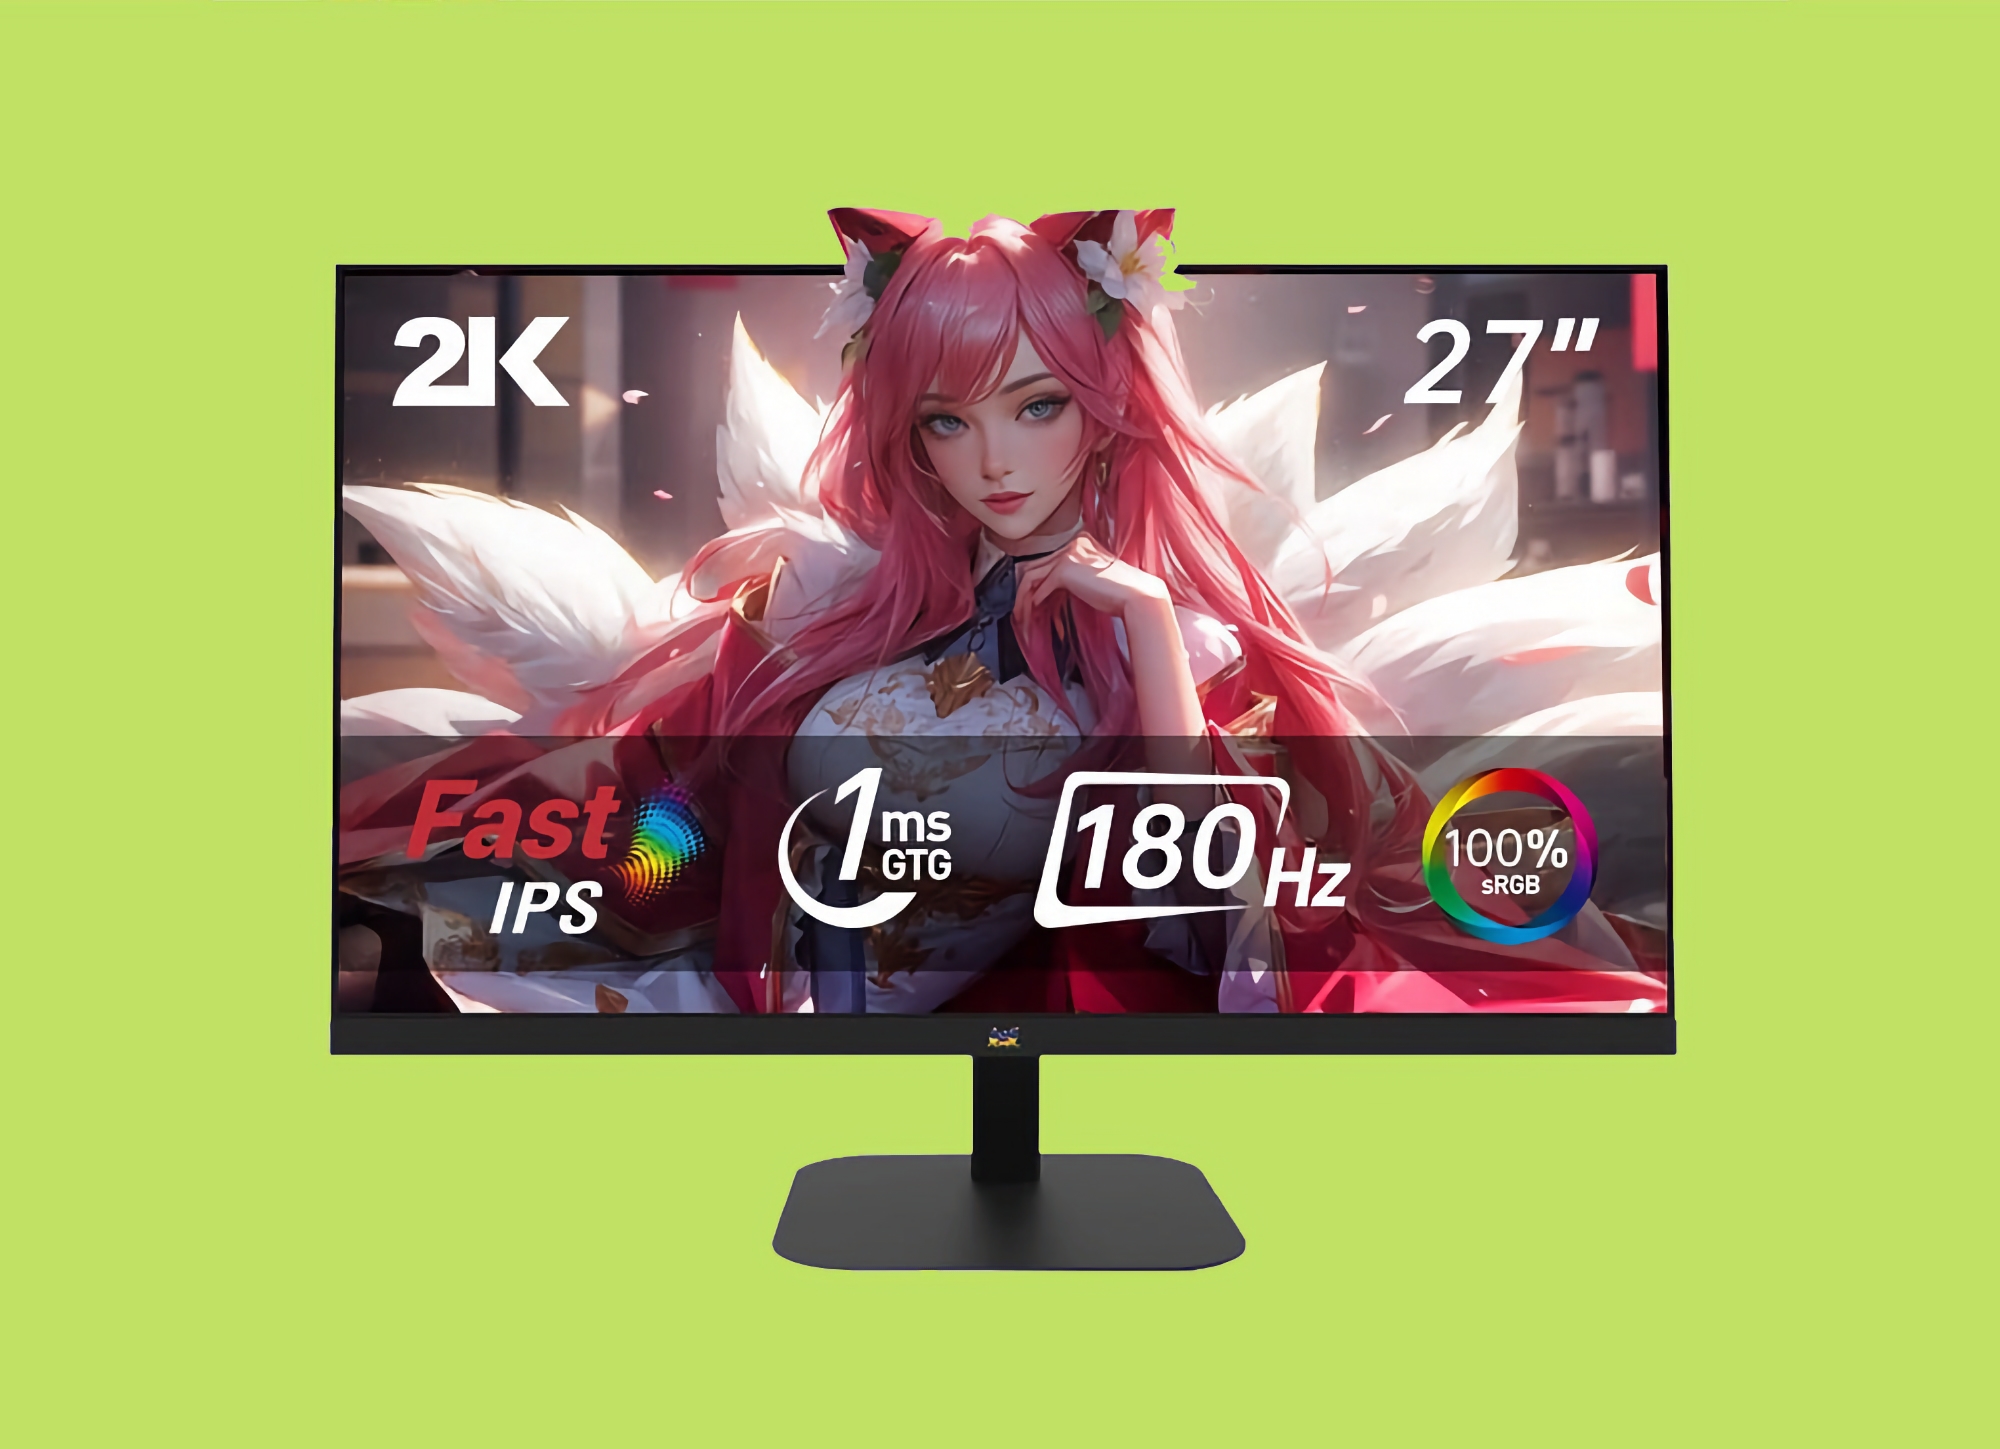 ViewSonic introducerede VX2757-2K-PRO: 27-tommers skærm med 2K-opløsning og 180Hz opdateringshastighed til $123